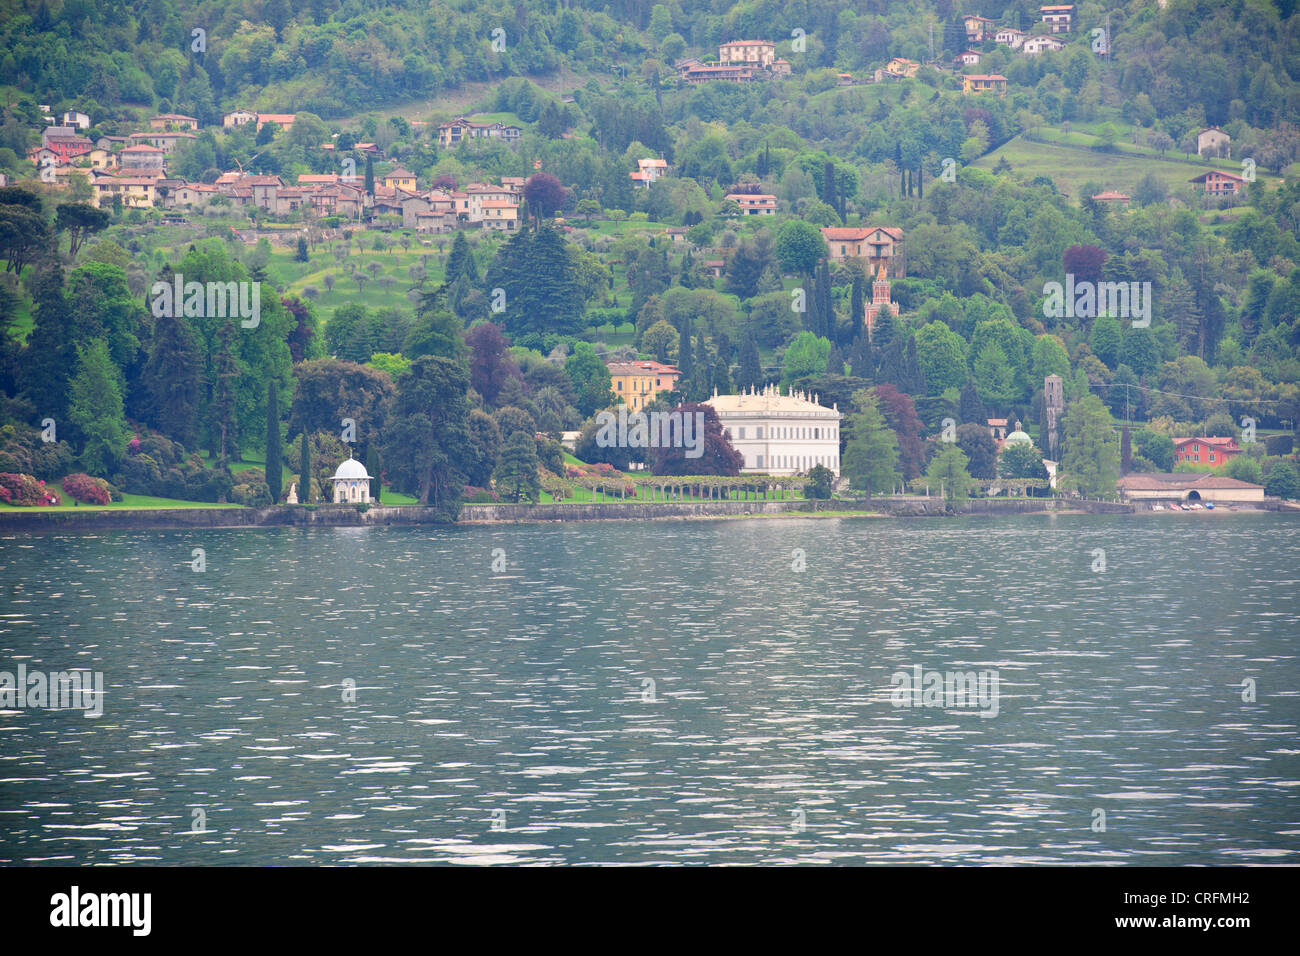 Bellagio, See überqueren, Hotels, Restaurants auf der Vorderseite zurück Straßen, Geschäfte, Blick auf den See, Gärten, Comer See, italienische Seen, Italien Stockfoto